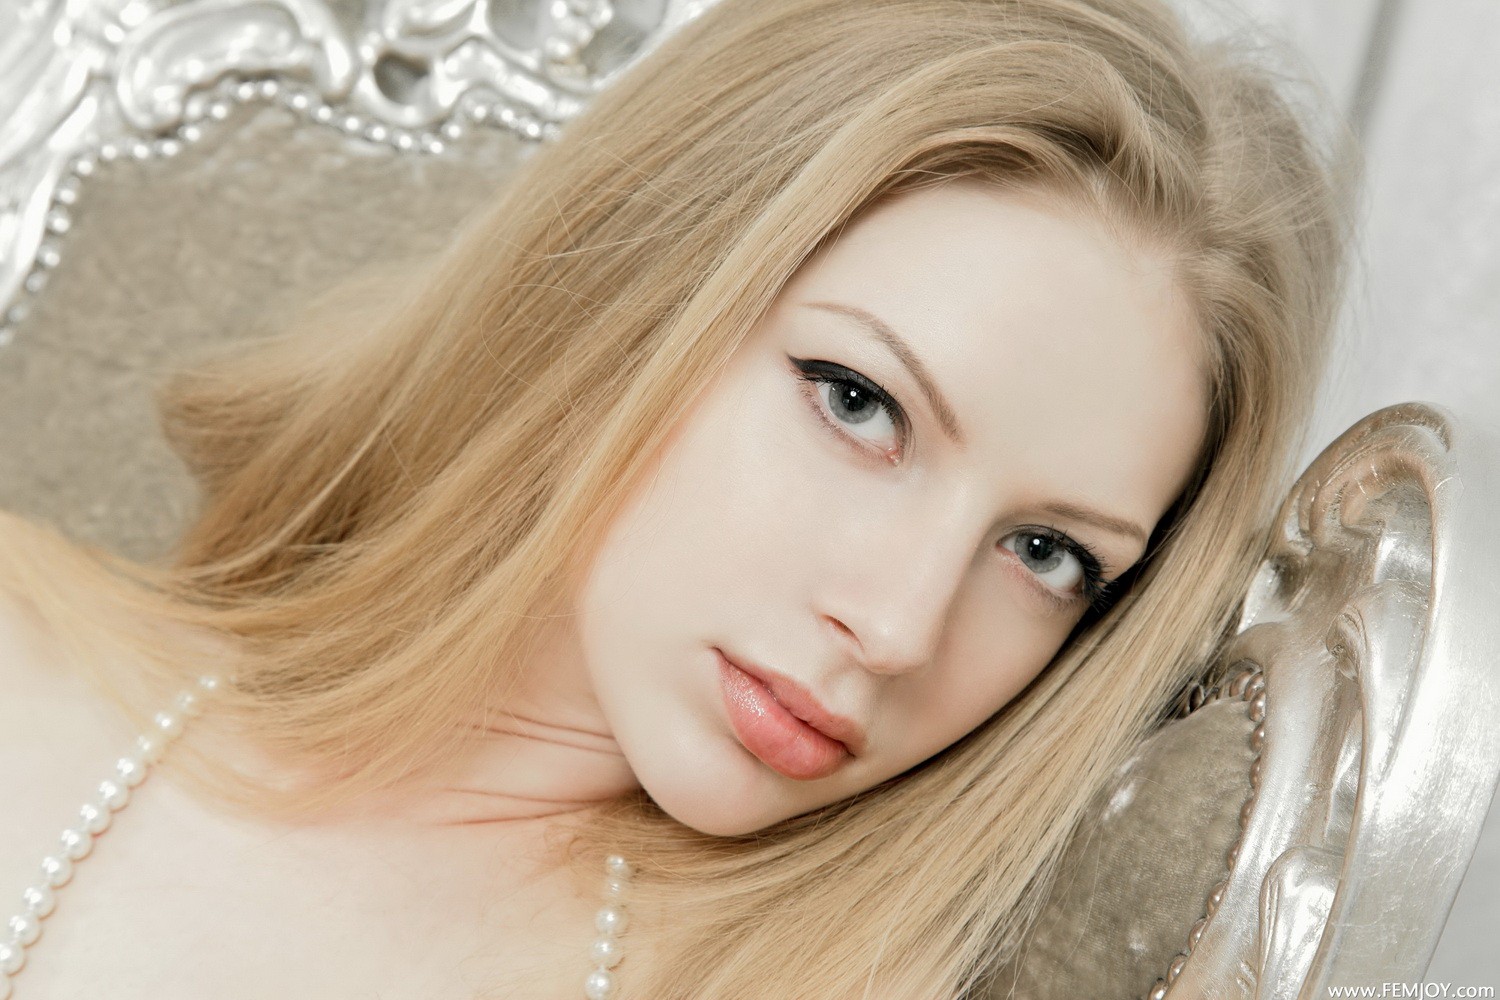 People 1500x1000 liza Femjoy women blonde face closeup Stefan Soell makeup gray eyes pearl necklace